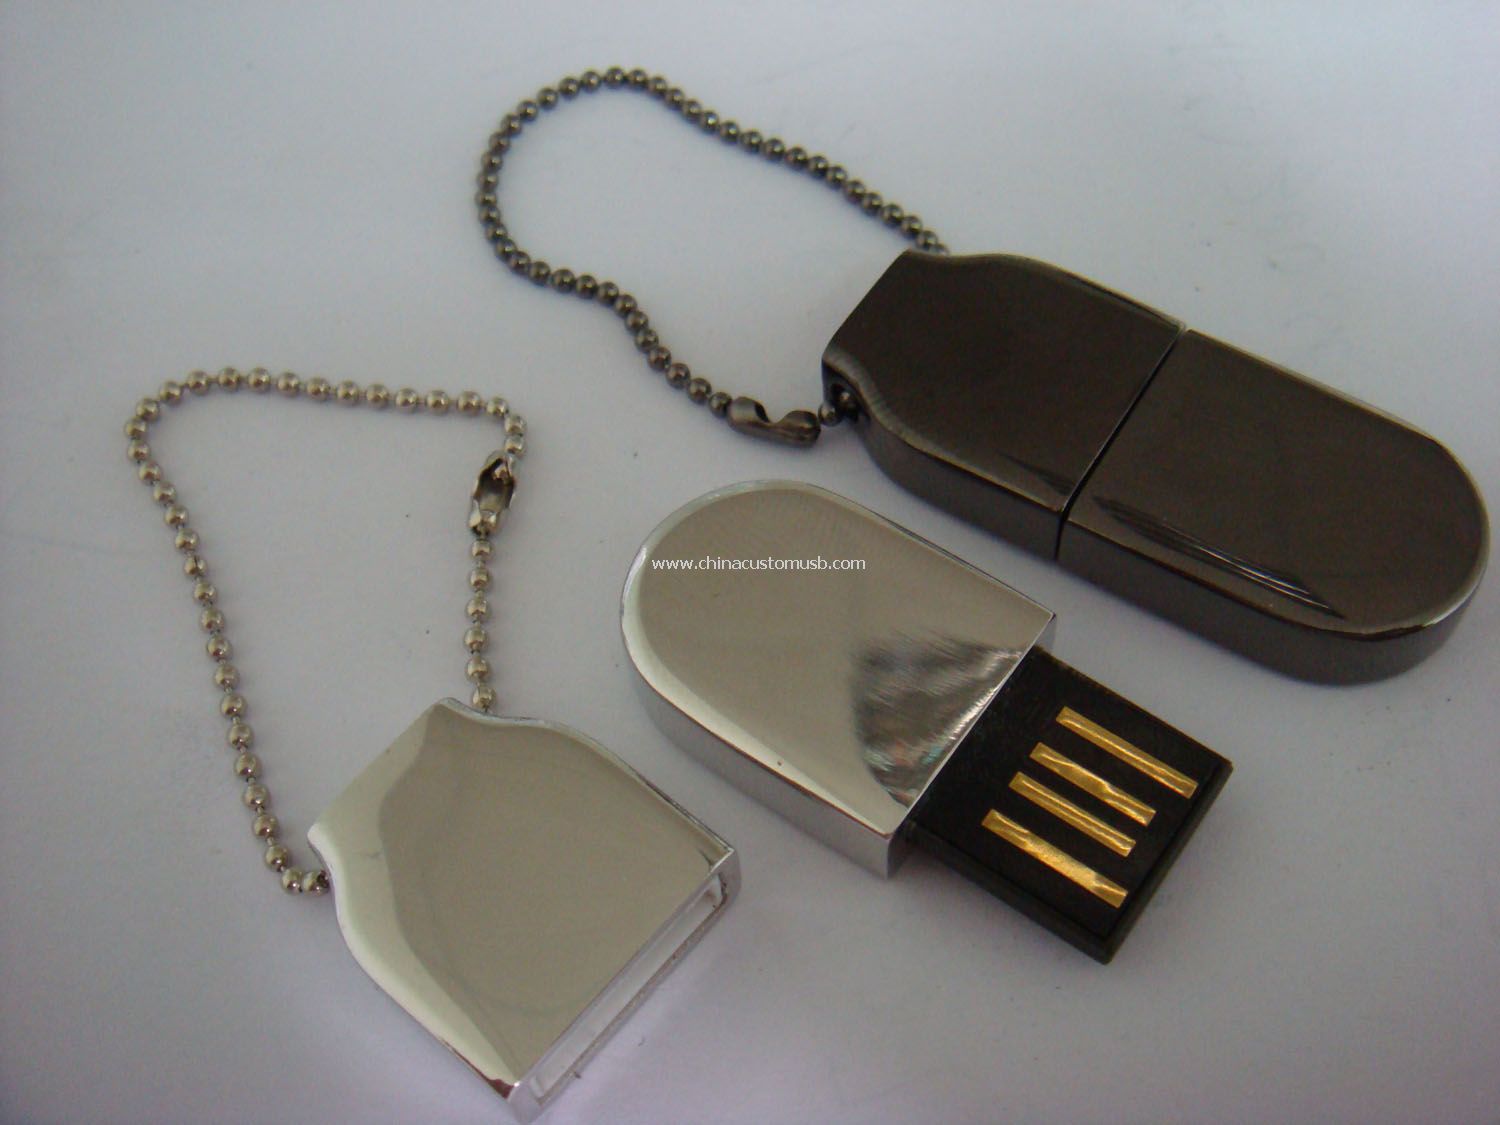 Metall Mini-USB-Flash-Laufwerk